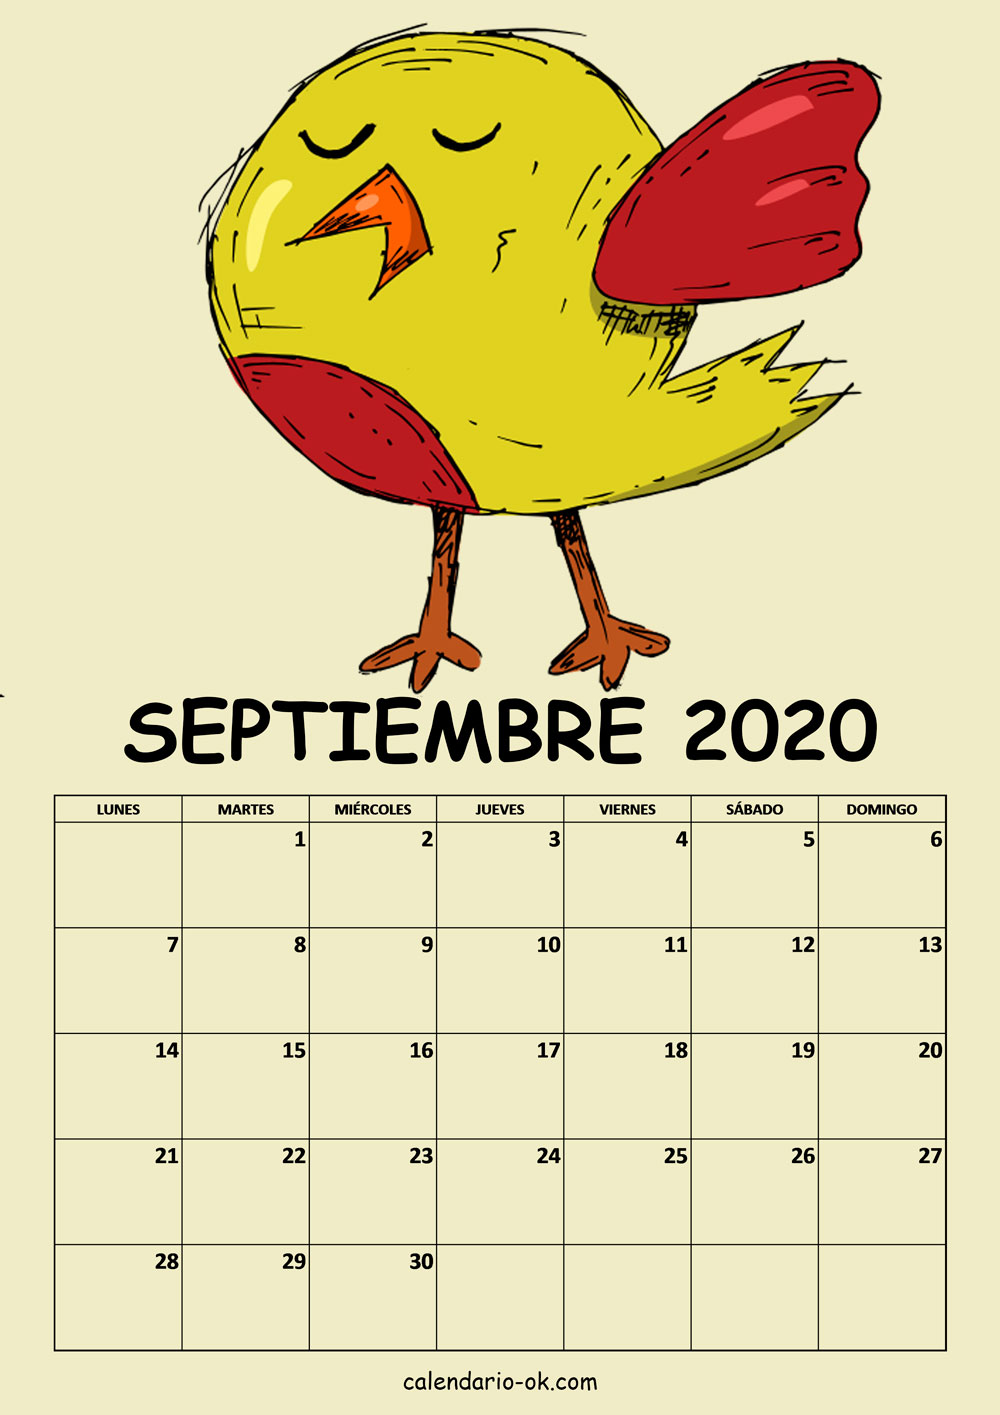 Calendario SEPTIEMBRE 2020 DIBUJO PAJAROS